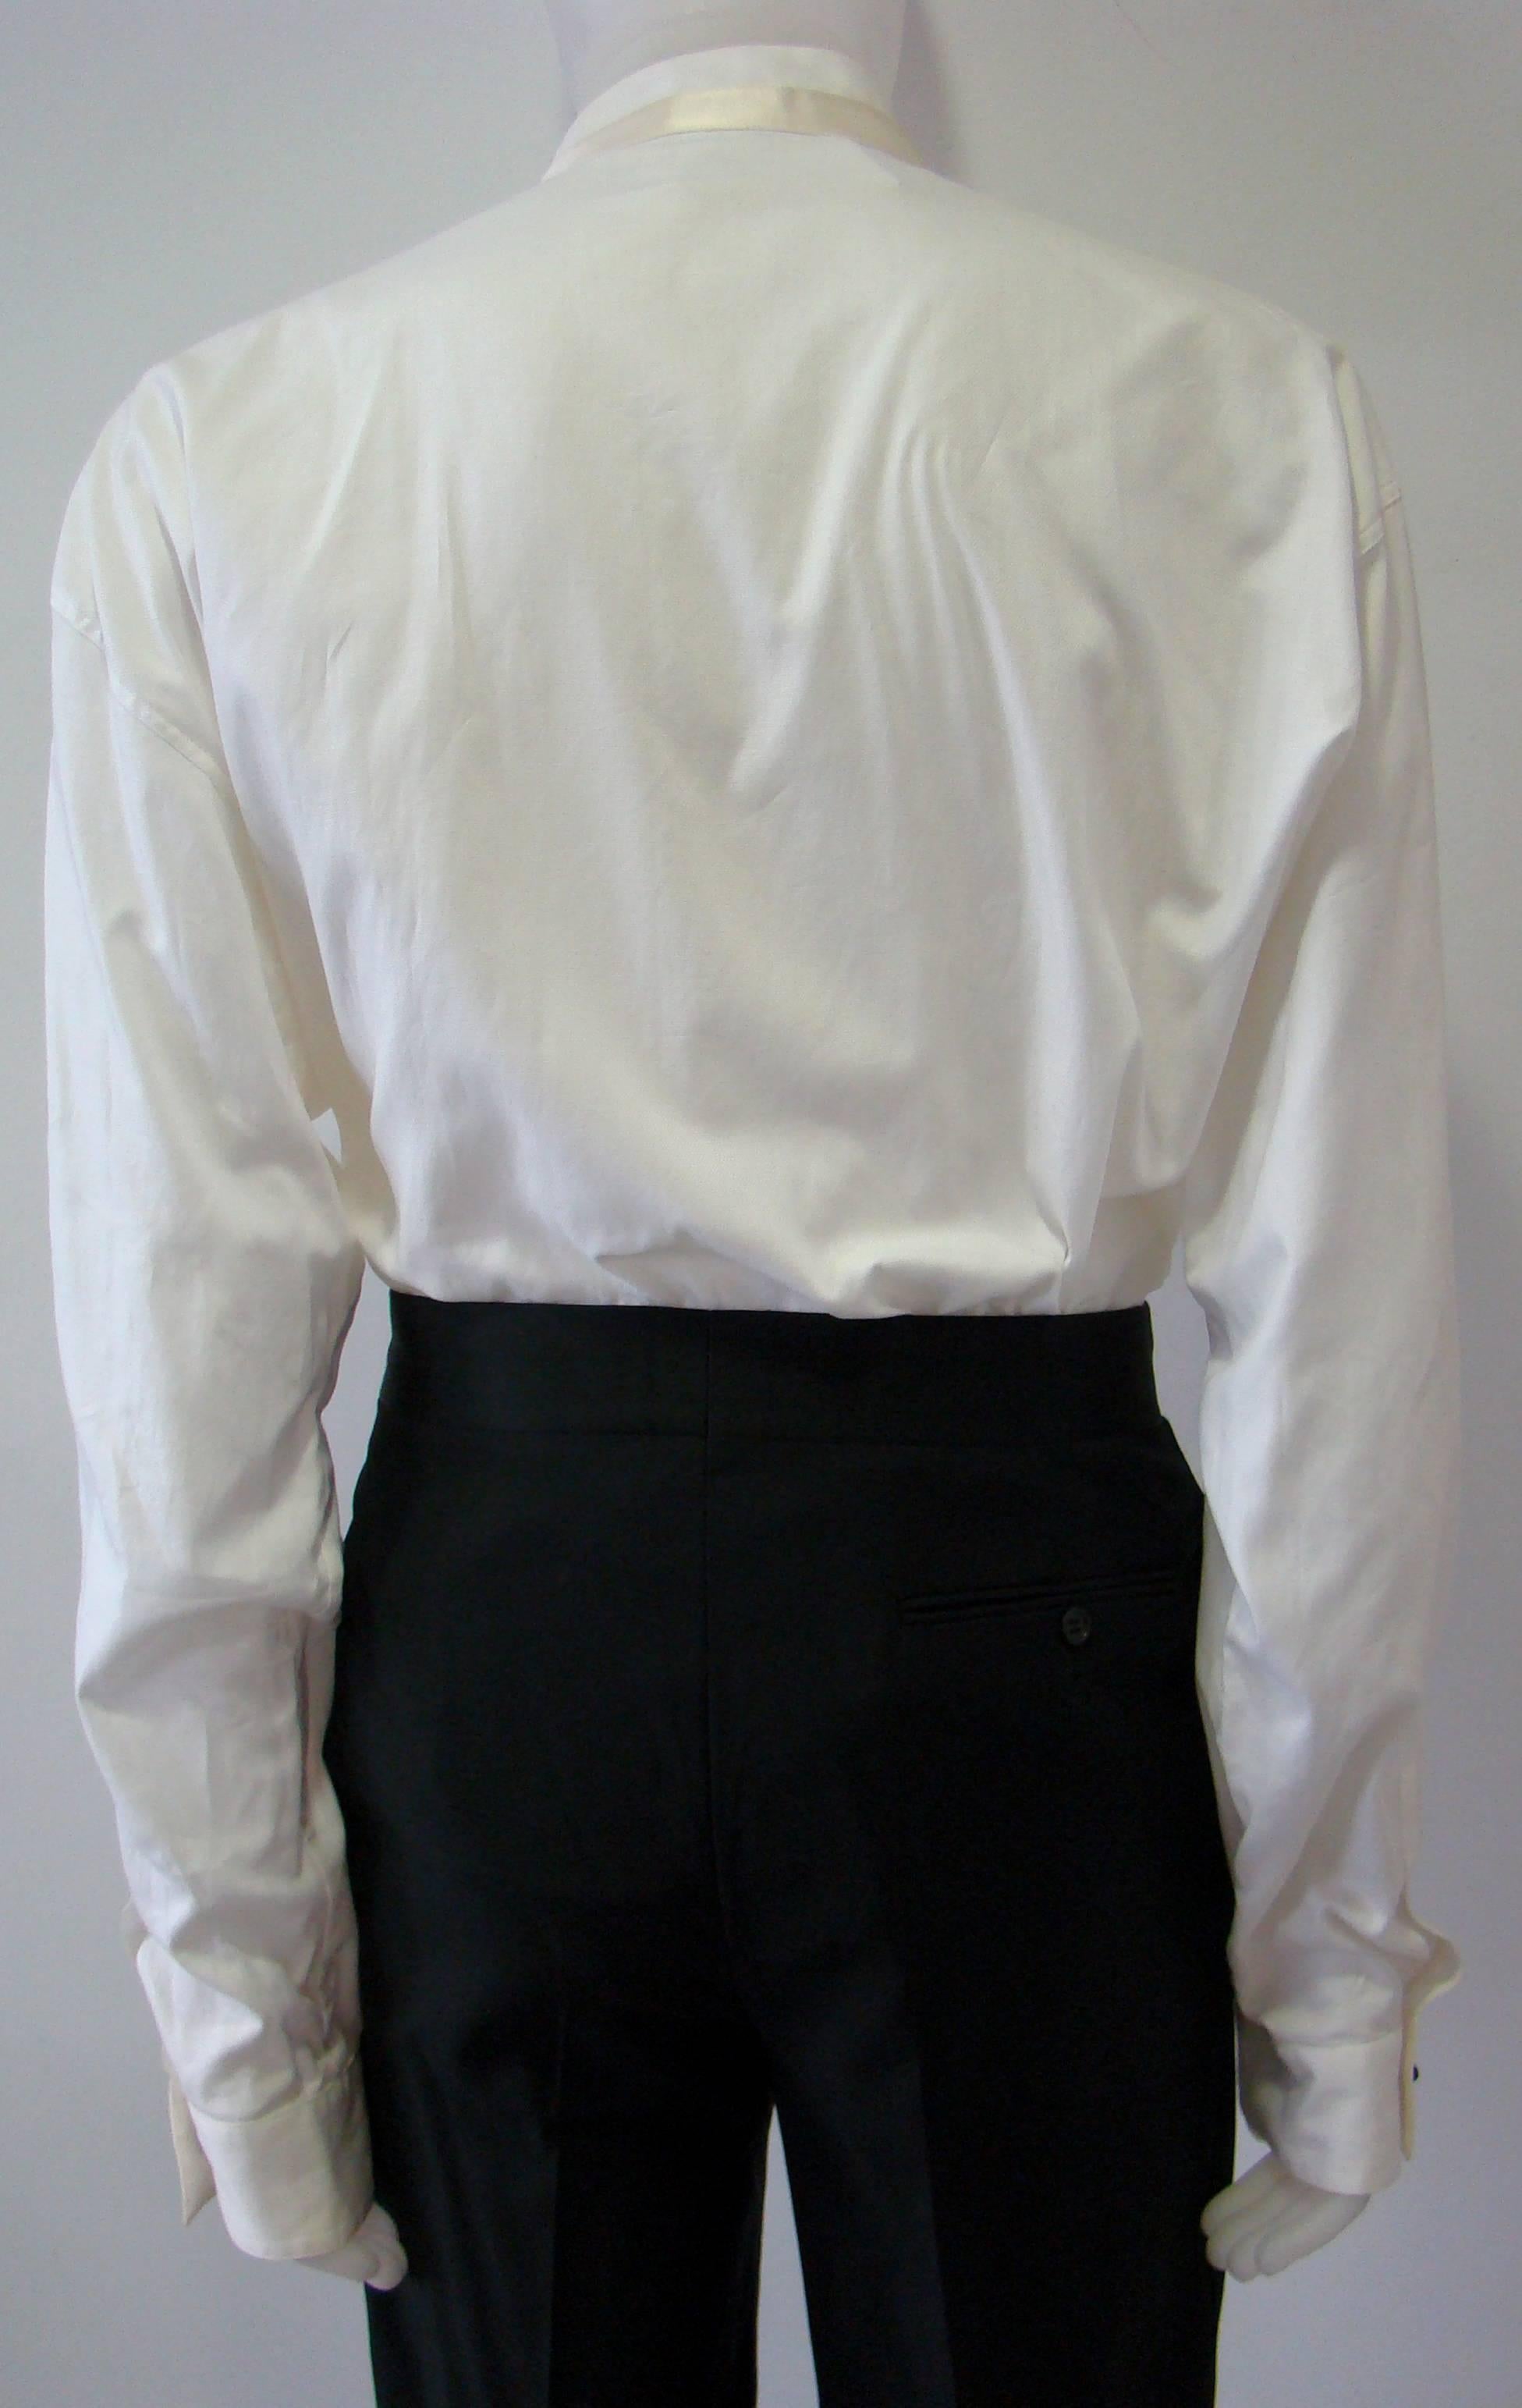 Gianni Versace Tuxedo Evening Shirt Fall 1990 For Sale 1